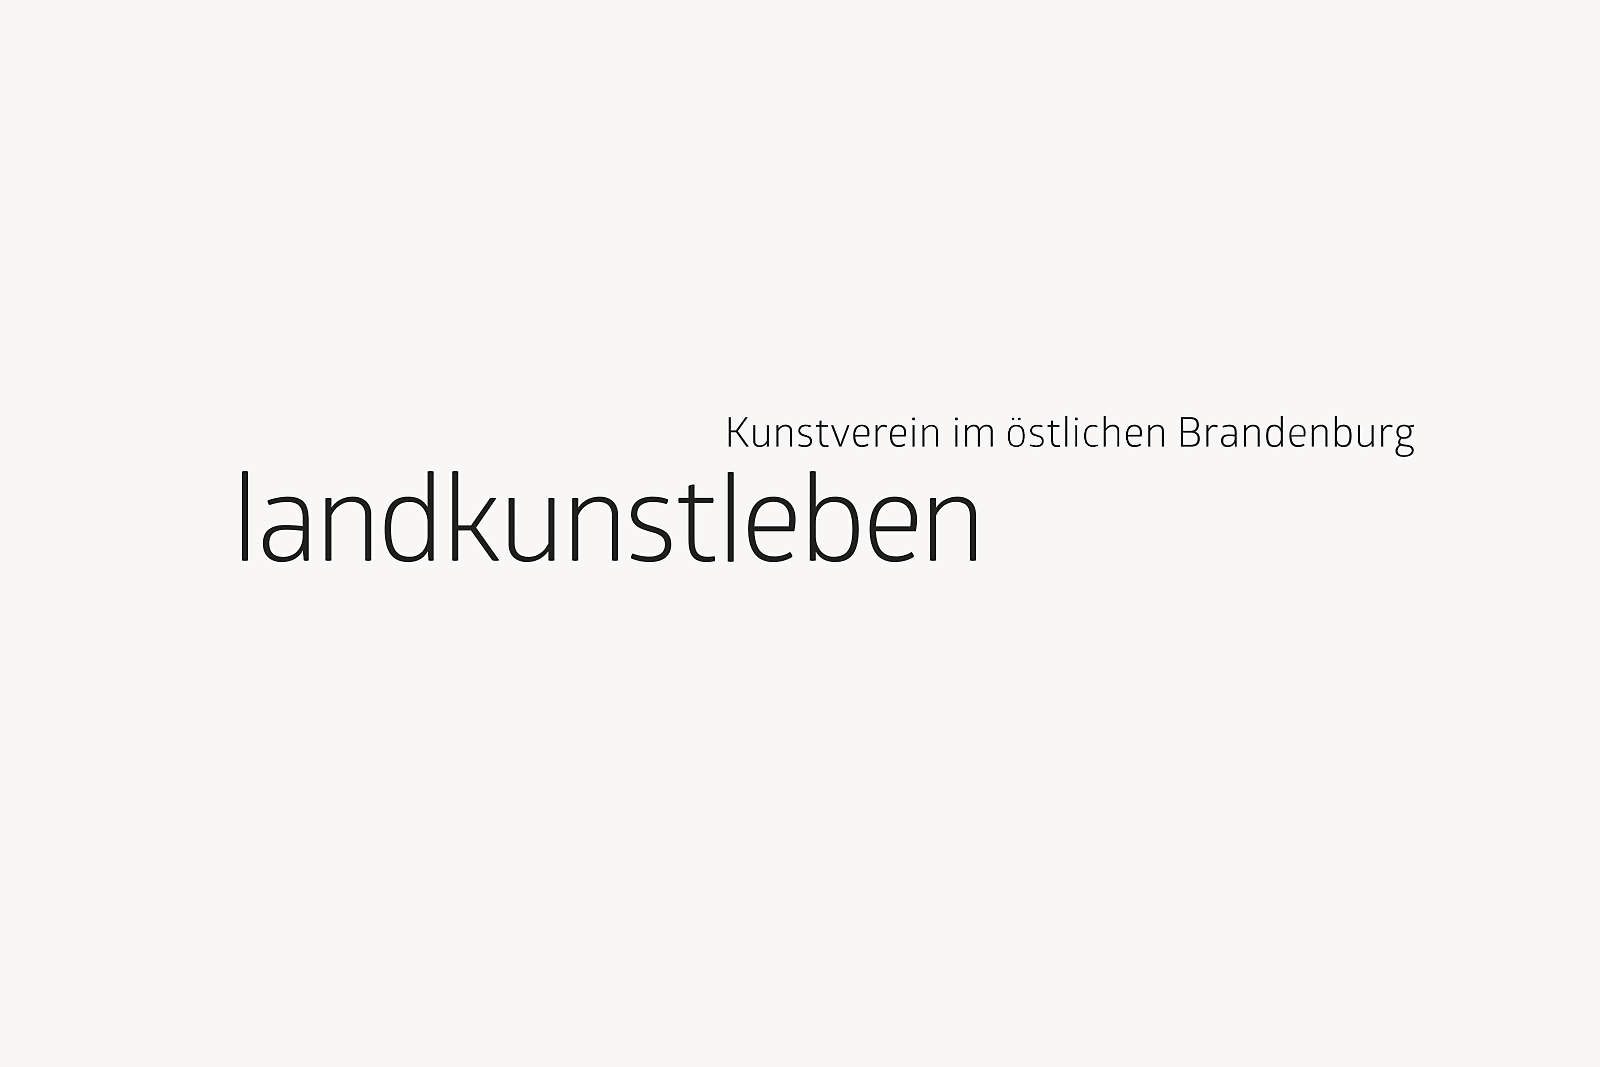 Kunstverein Landkunstleben, Website & Erscheinungsbild ?>